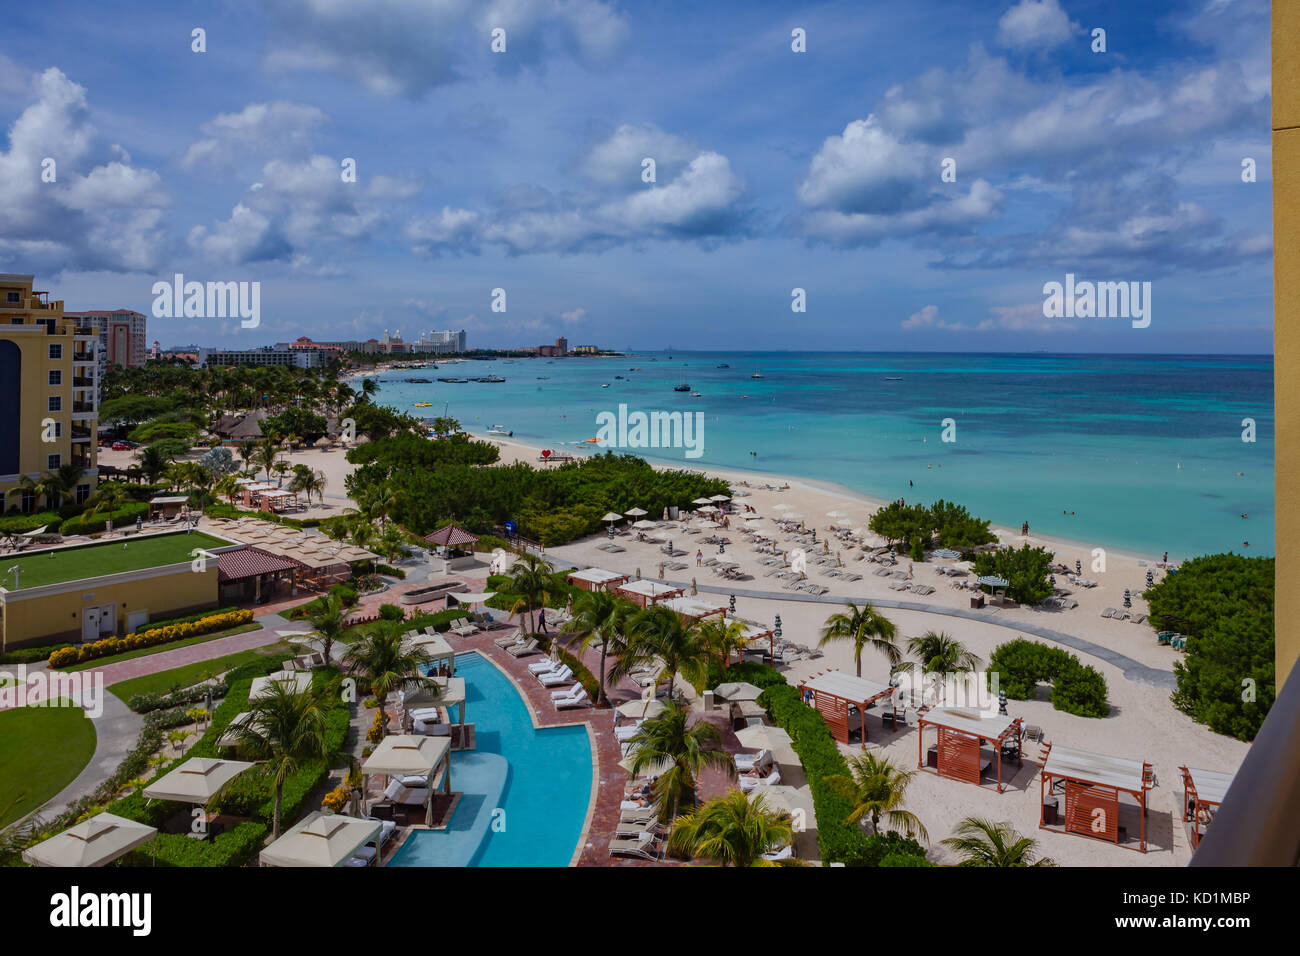 Touristen Resort von Palm Beach auf Aruba auf der südlichen Karibik in der Morgensonne. Mehrere Luxury Beach Hotels und Boote bei Offshore verankern. Stockfoto